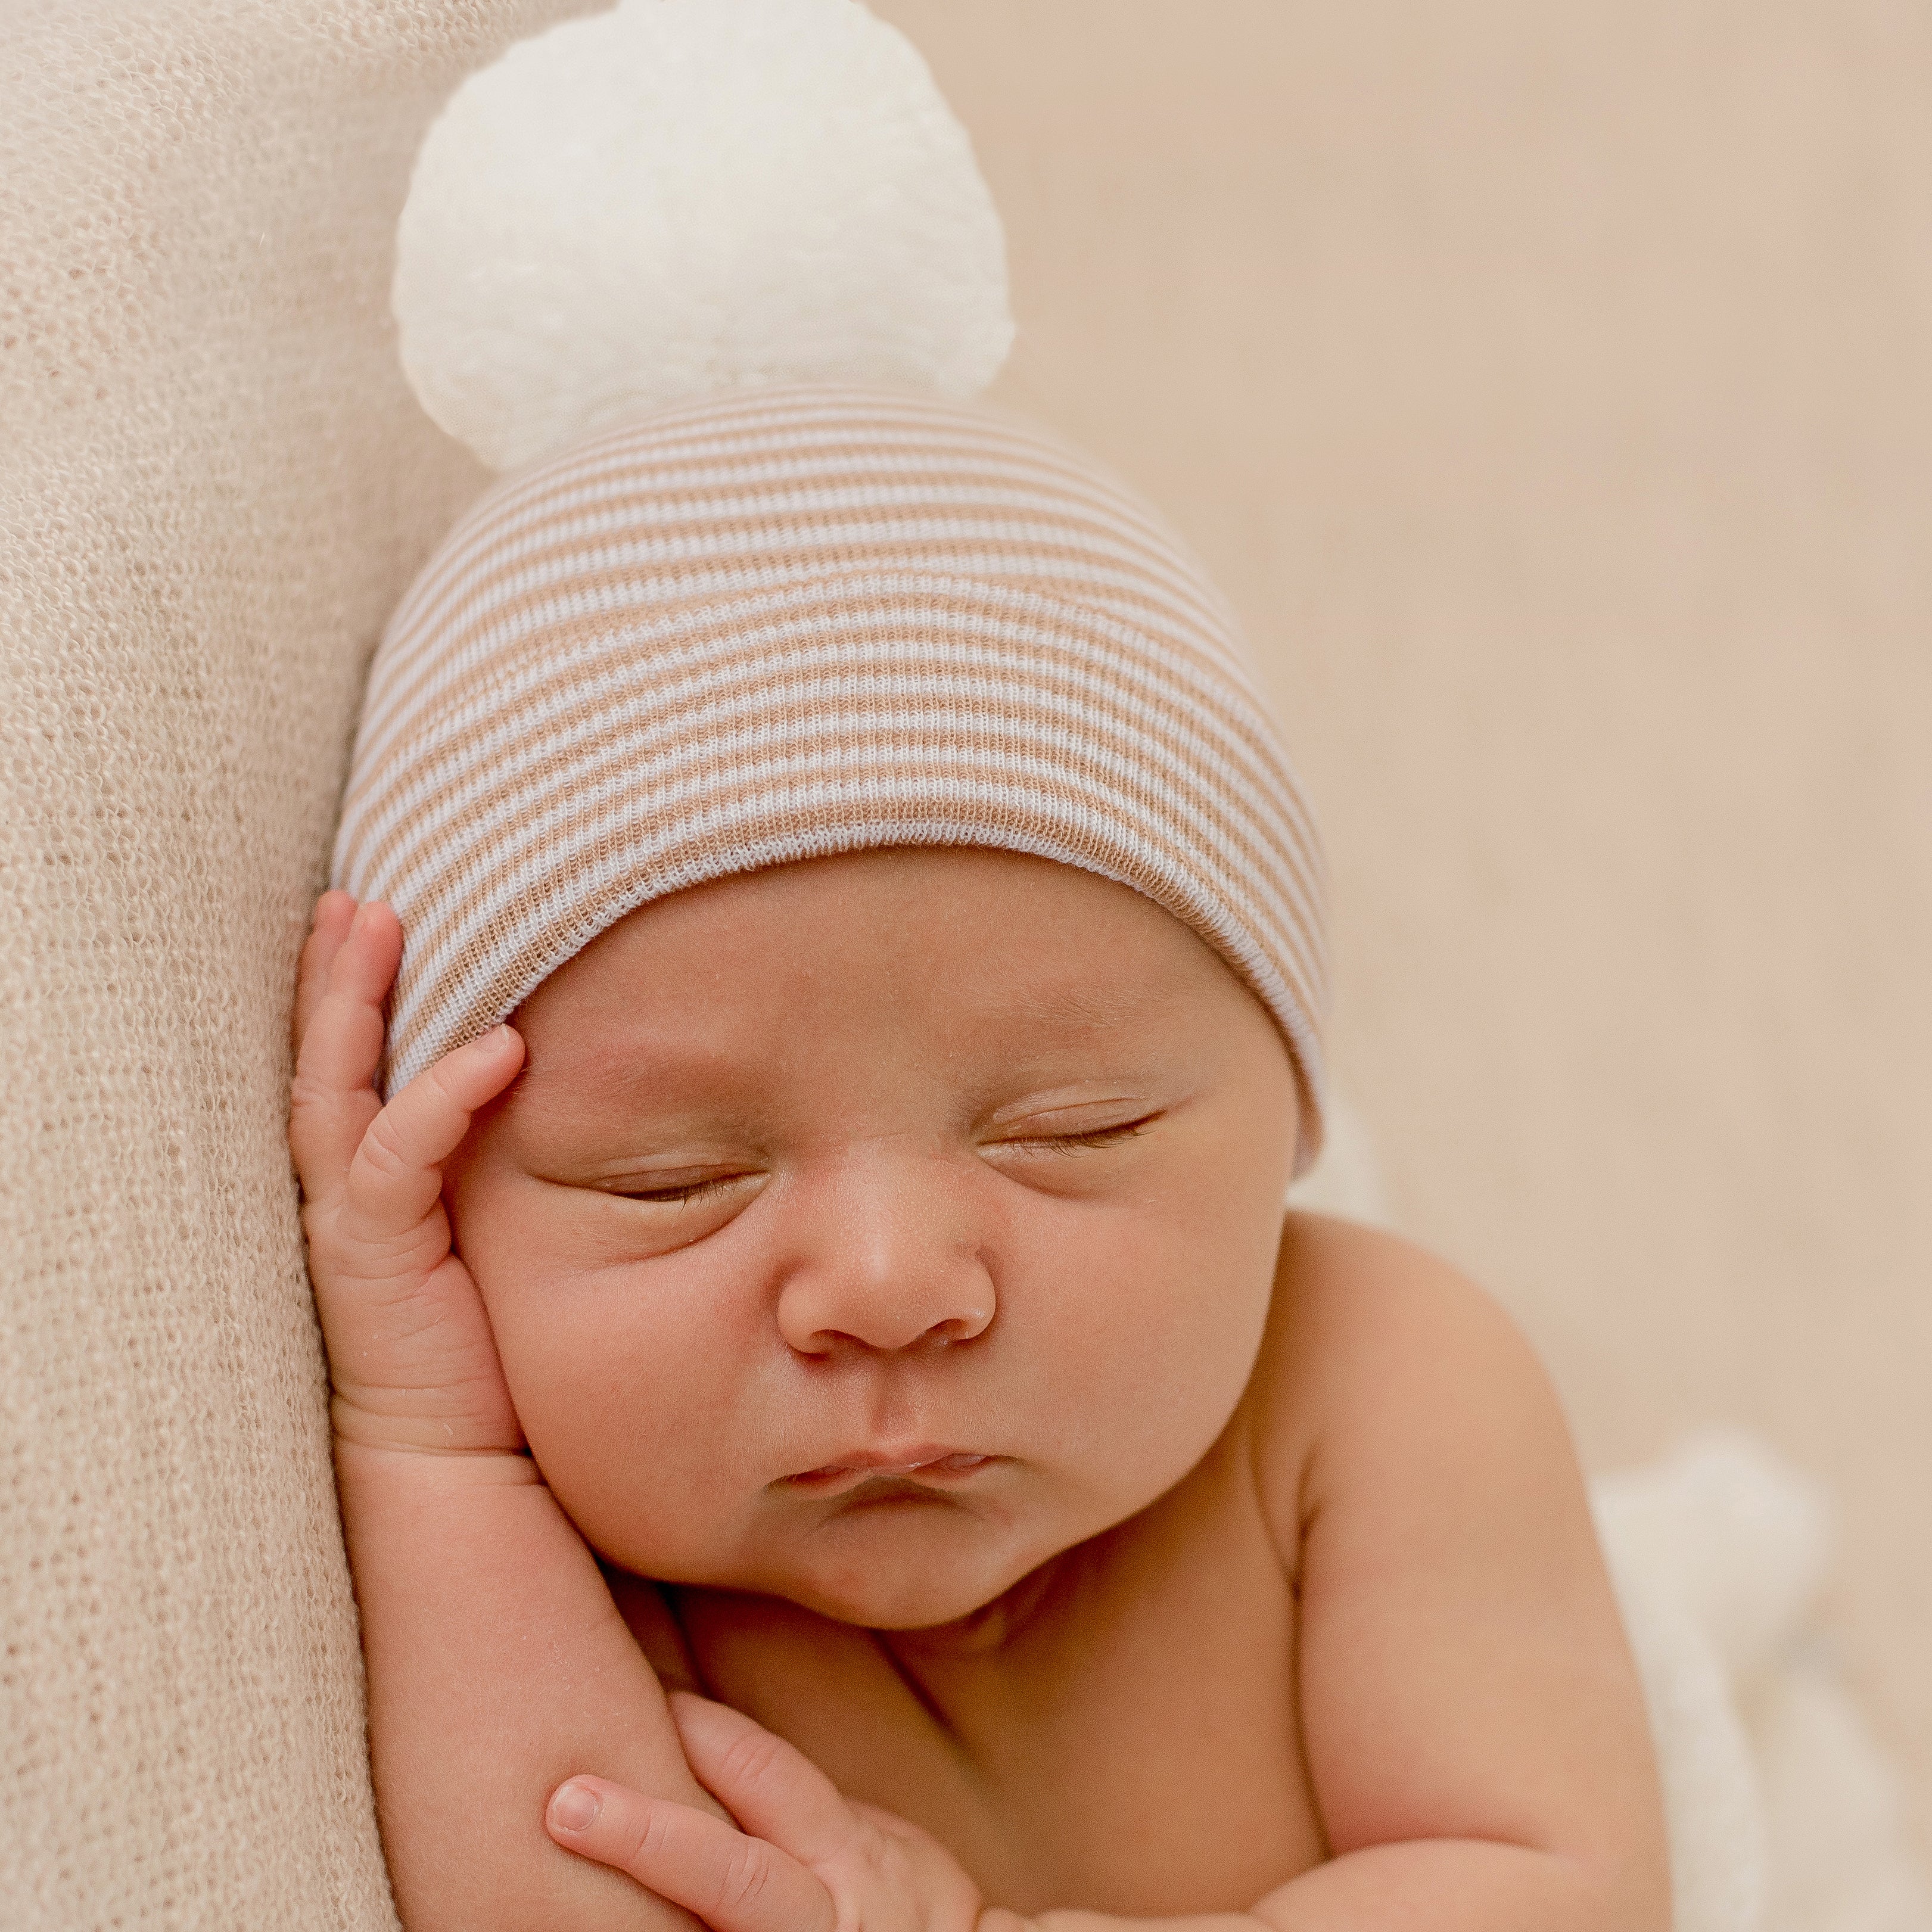 Tan and White Stripe Newborn Boy Hospital Beanie Hat With Pom Pom